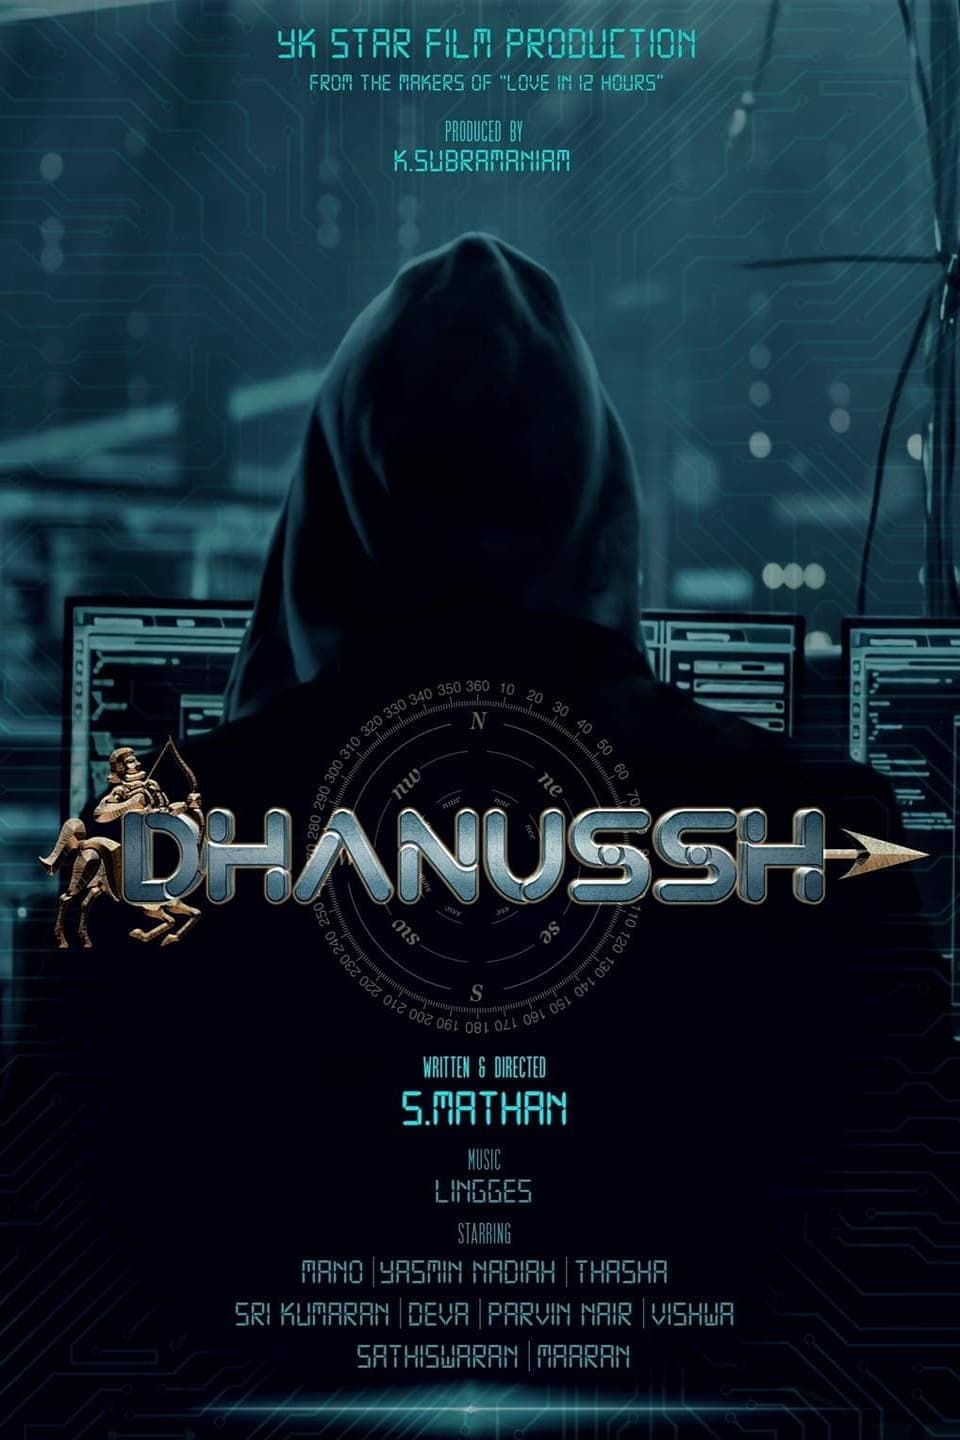 Dhanussh